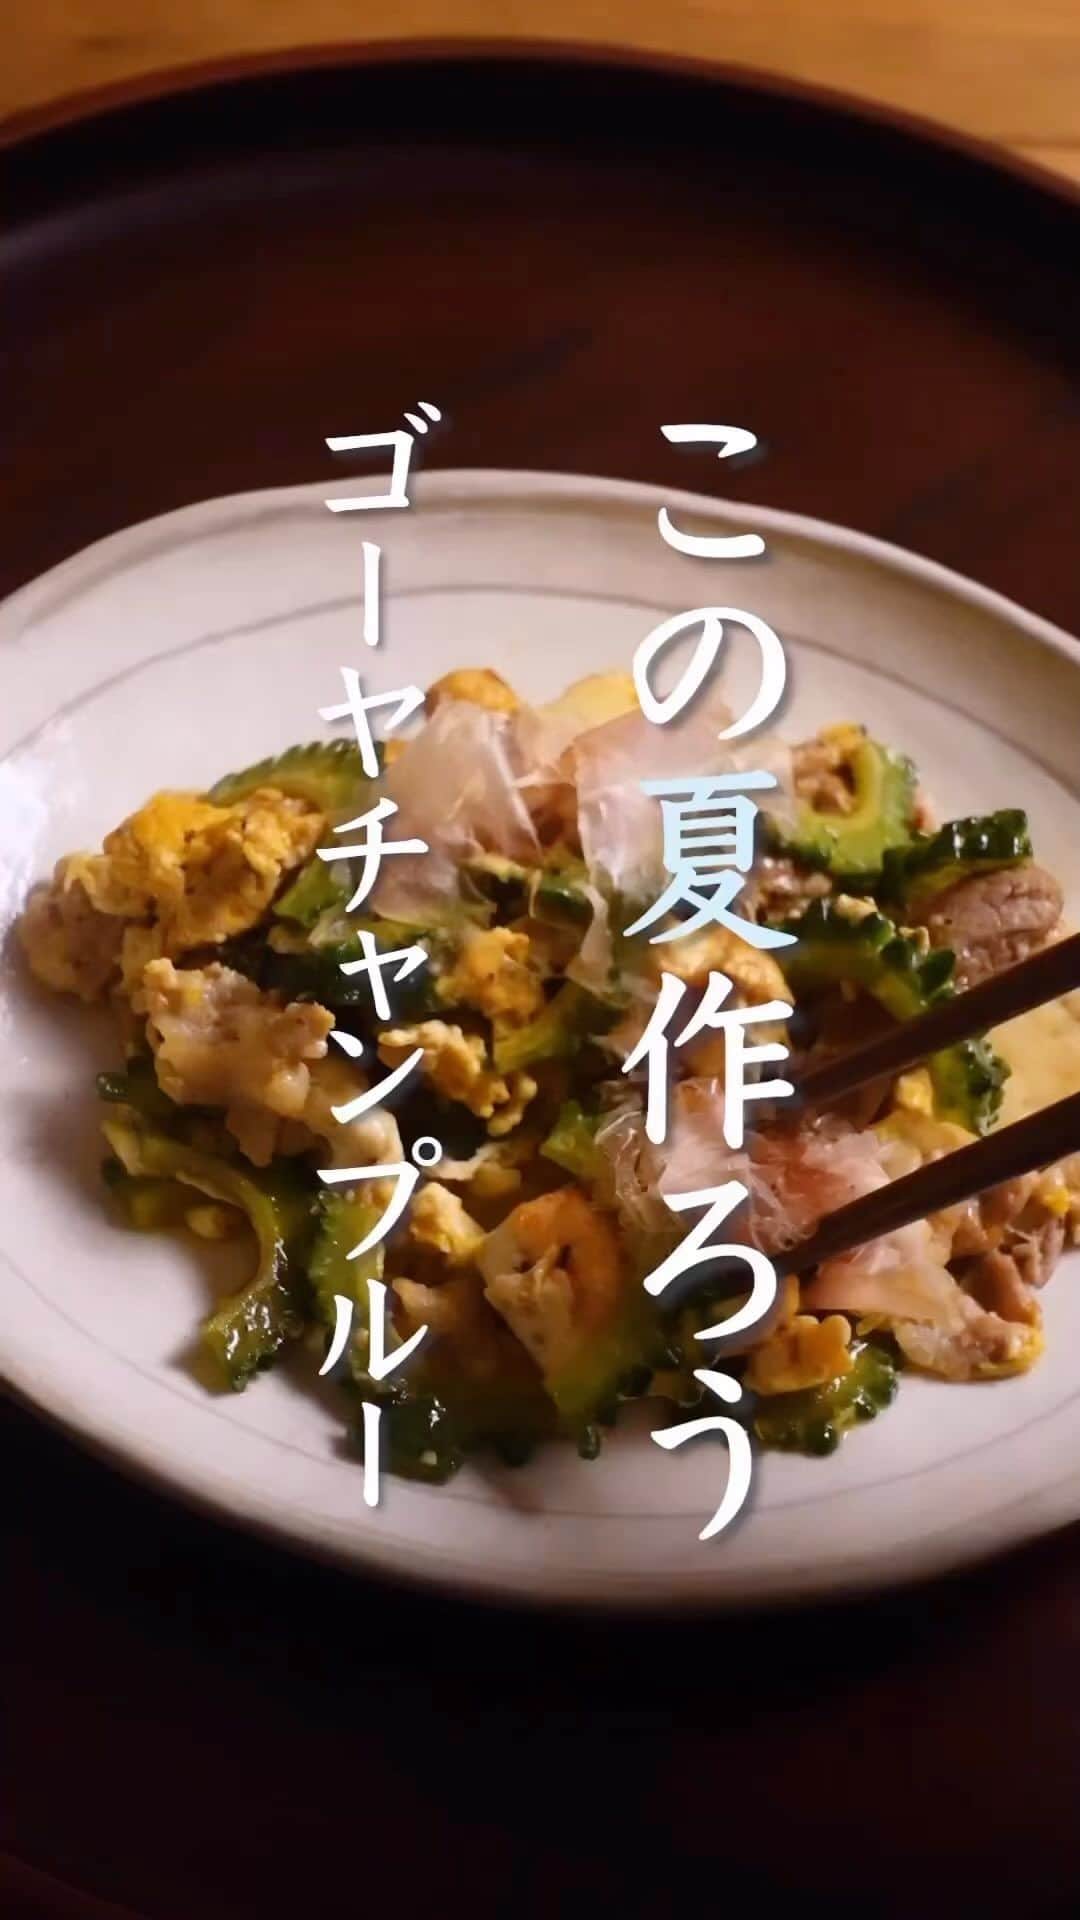 なでしこ健康生活のインスタグラム：「Repost @cooking_tatsuya ・・・ 🤤🤤🥳 ⁡ 今回は！夏に作りたい栄養満点おかず。ゴーヤチャンプルーのとっておきレシピをご紹介します😊 ⁡ 【材料】 ◎ゴーヤチャンプルー ゴーヤ・・・1/2本 木綿豆腐・・・200g 豚こま肉・・・150g 卵・・・１個 鰹節・・・3g ⁡ 砂糖・・・小さじ１ 塩・・・ひとつまみ 醤油・・・大さじ１ ⁡ 【主食/発芽酵素玄米】 生きている玄米・・３合 酵素ごはんの素・・・大さじ２ 低分子クラスター浸透水リセラ ⁡ 今回は 発芽酵素玄米と味噌汁とゴーヤチャンプルーの 一汁一菜の組み合わせ。 栄養バランスもバッチリなレシピです ⁡ 発芽酵素玄米とも相性抜群です✨ 作り方 1.ゴーヤは半分に切って、タネを取り5mm幅にスライスする。 　カットしたゴーヤに塩と砂糖を加え揉み込んでおく 2.豆腐は、余分な水分を拭き取って600wで2分レンチンする 3.フライパンにごま油を引いて、豆腐はちぎりながら加え、焼き目をつける。 4.豆腐に、焼き色がついたら、豚こま肉を加え炒める。 5.豚こま肉に、火が通ったらゴーヤを加え2.3分炒め合わせる。 　醤油を加え炒め合わせ、最後に溶き卵を加えて、炒め合わせ半熟で火を止める。 6.器に盛り付けて、鰹節を乗せたら完成。 ⁡ 【今回のポイント】 ❶ゴーヤに下味をつける！ ❷醤油で味付けした後、仕上げに卵でとじる！ この2つを行うとグッとおいしくなります🙌 ⁡ @nadeshiko_healthy_life さんの YouTubeチャンネルではさらに 詳しい作り方を解説しています✨ ⬇︎⬇︎⬇︎ ⁡ このレシピの詳細と詳しい作り方は @nadeshiko_healthy_life さんの ページでも、投稿されますのでそちらも是非ご覧ください😊！ ⁡ 使用したこだわりの食材 ▷シリカのだしSOUP ▷酵素ごはんの素 ▷低分子クラスター浸透水リセラ ▷生きている玄米 ▷玄米酵素ブレンド ⬇︎ここからチェックできます！ @nadeshiko_healthy_life ⁡ #なでしこ健康生活 #一汁一菜 #健康レシピ #簡単レシピ #玄米」